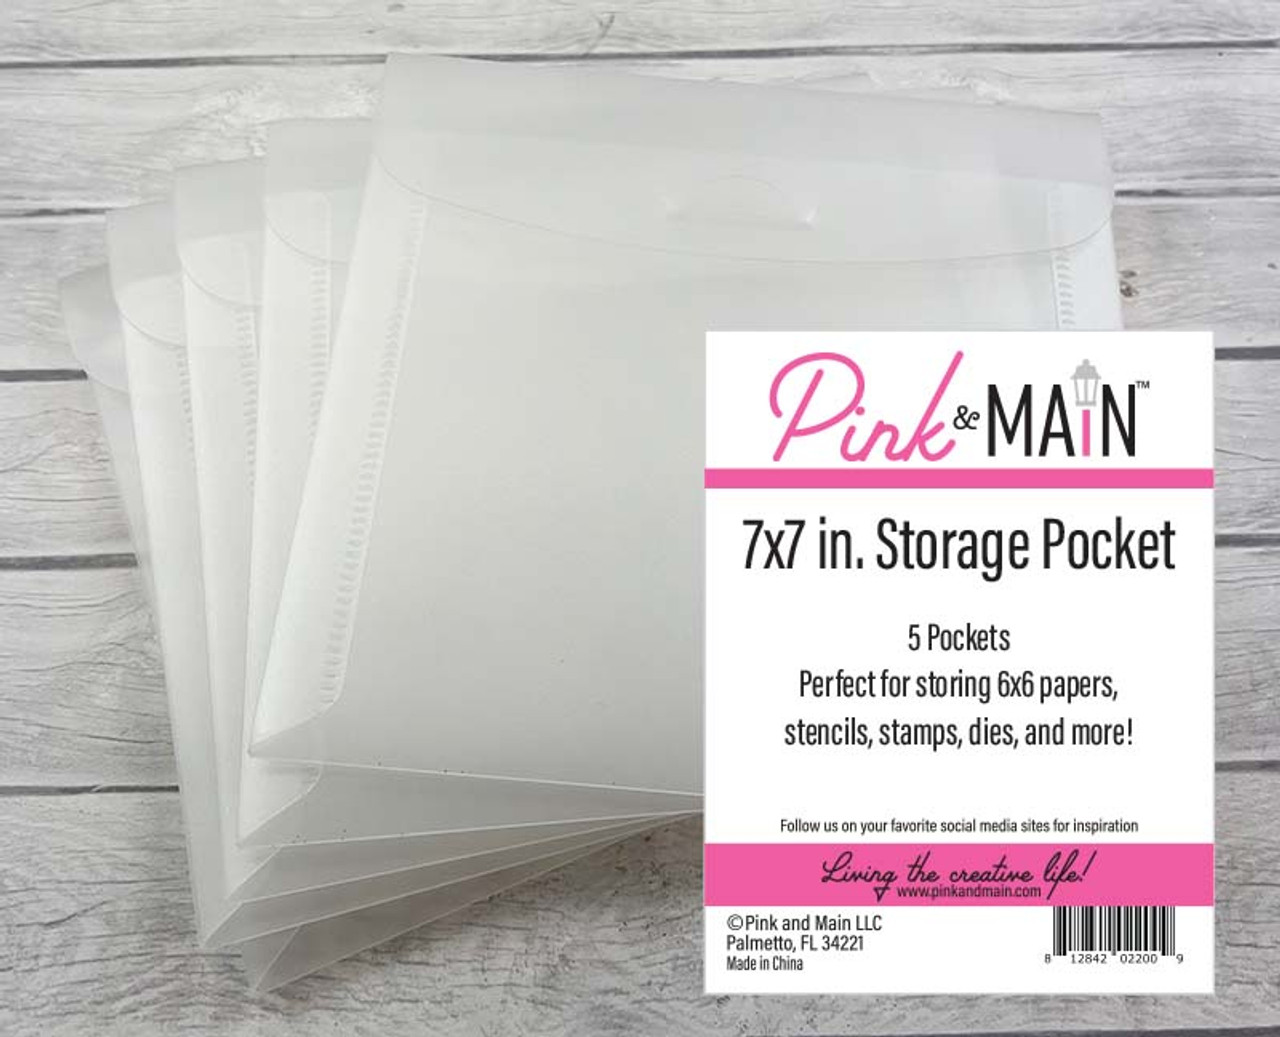 Paper Storage Pockets